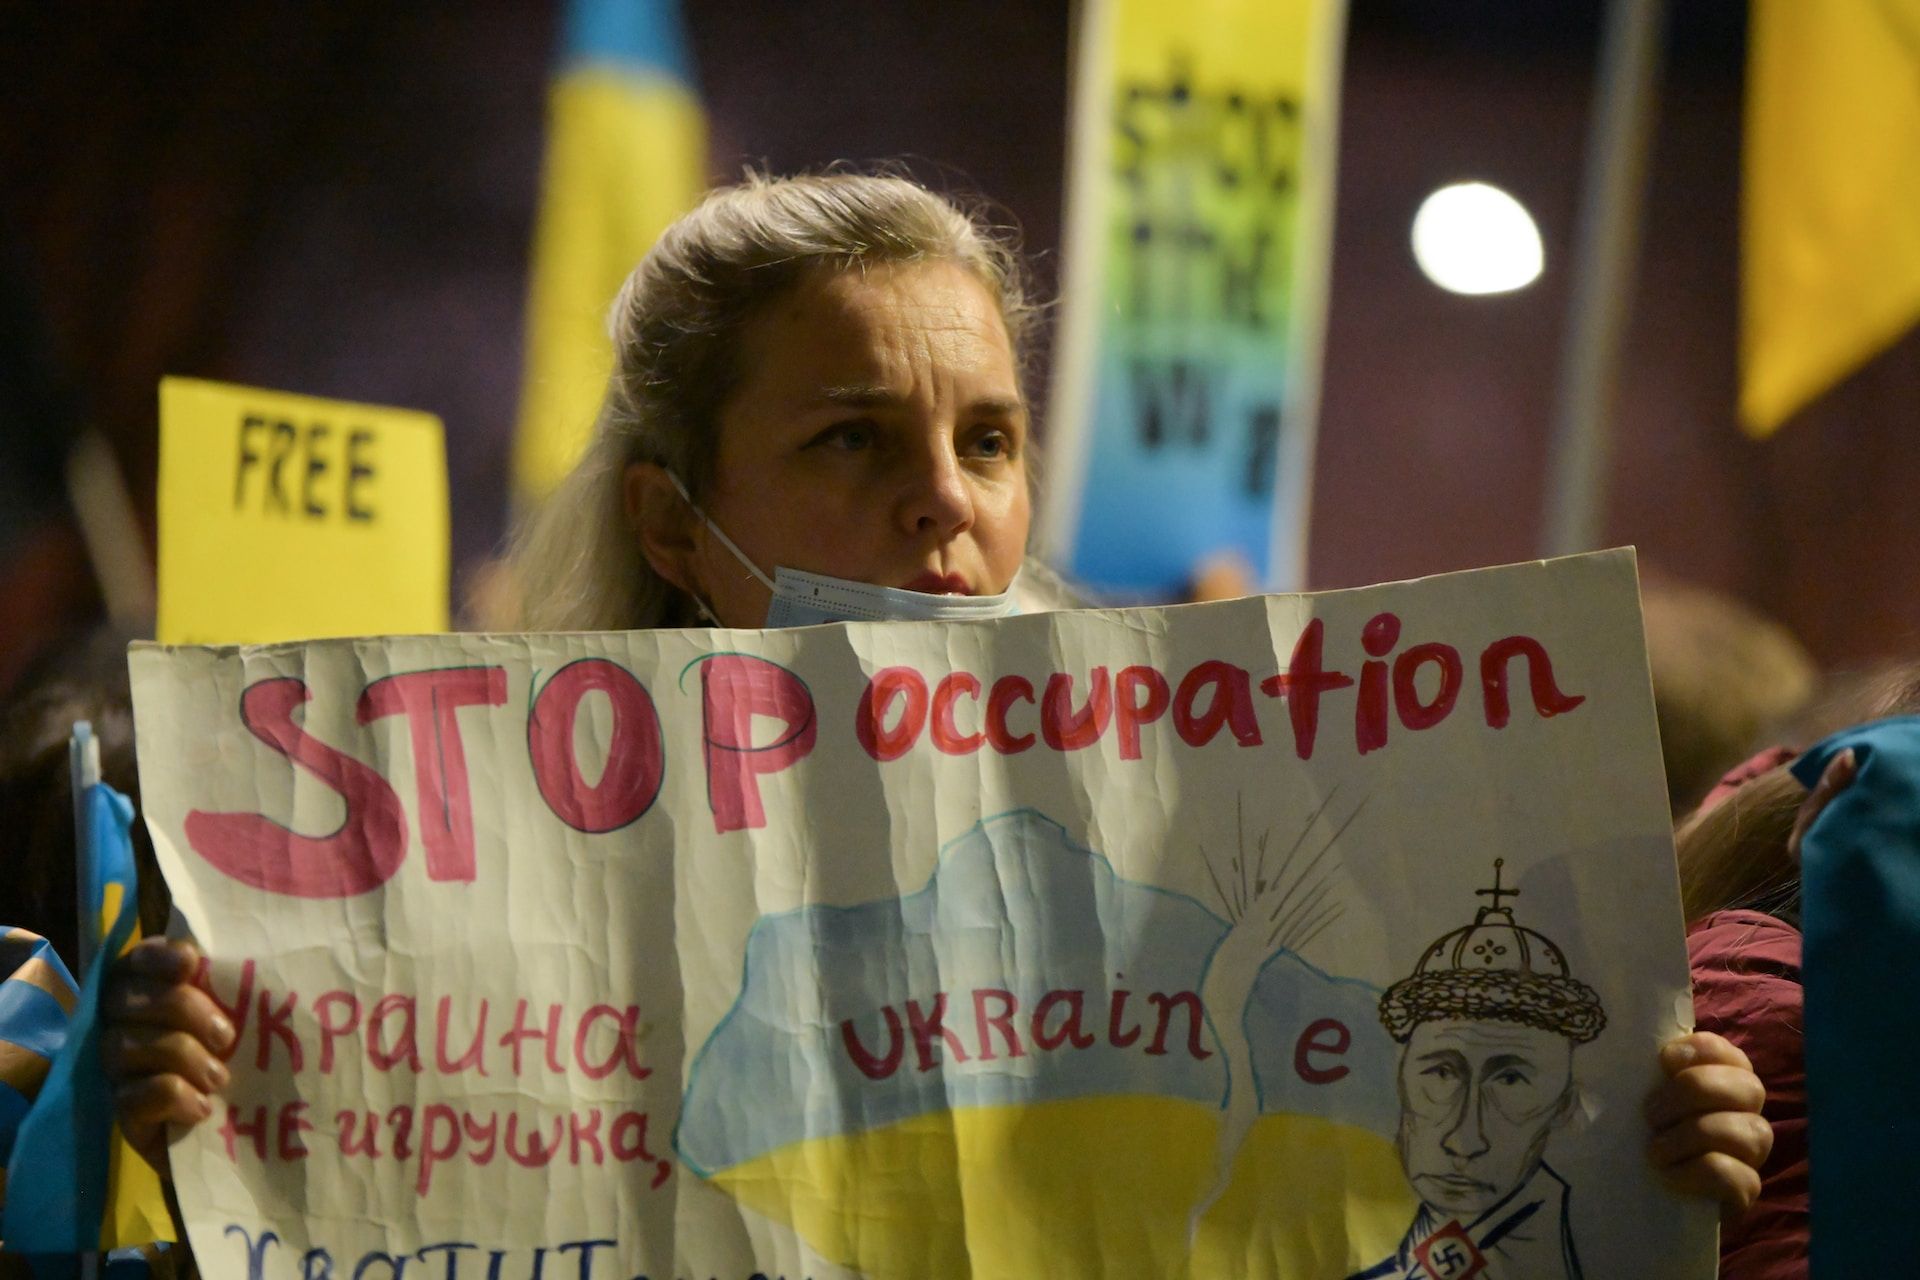 une femme manifestant pour mettre fin à l'invasion de l'Ukraine par la Russie - Photo by Samuel Jerónimo on https://unsplash.com/fr/photos/tvK-GETnCm4